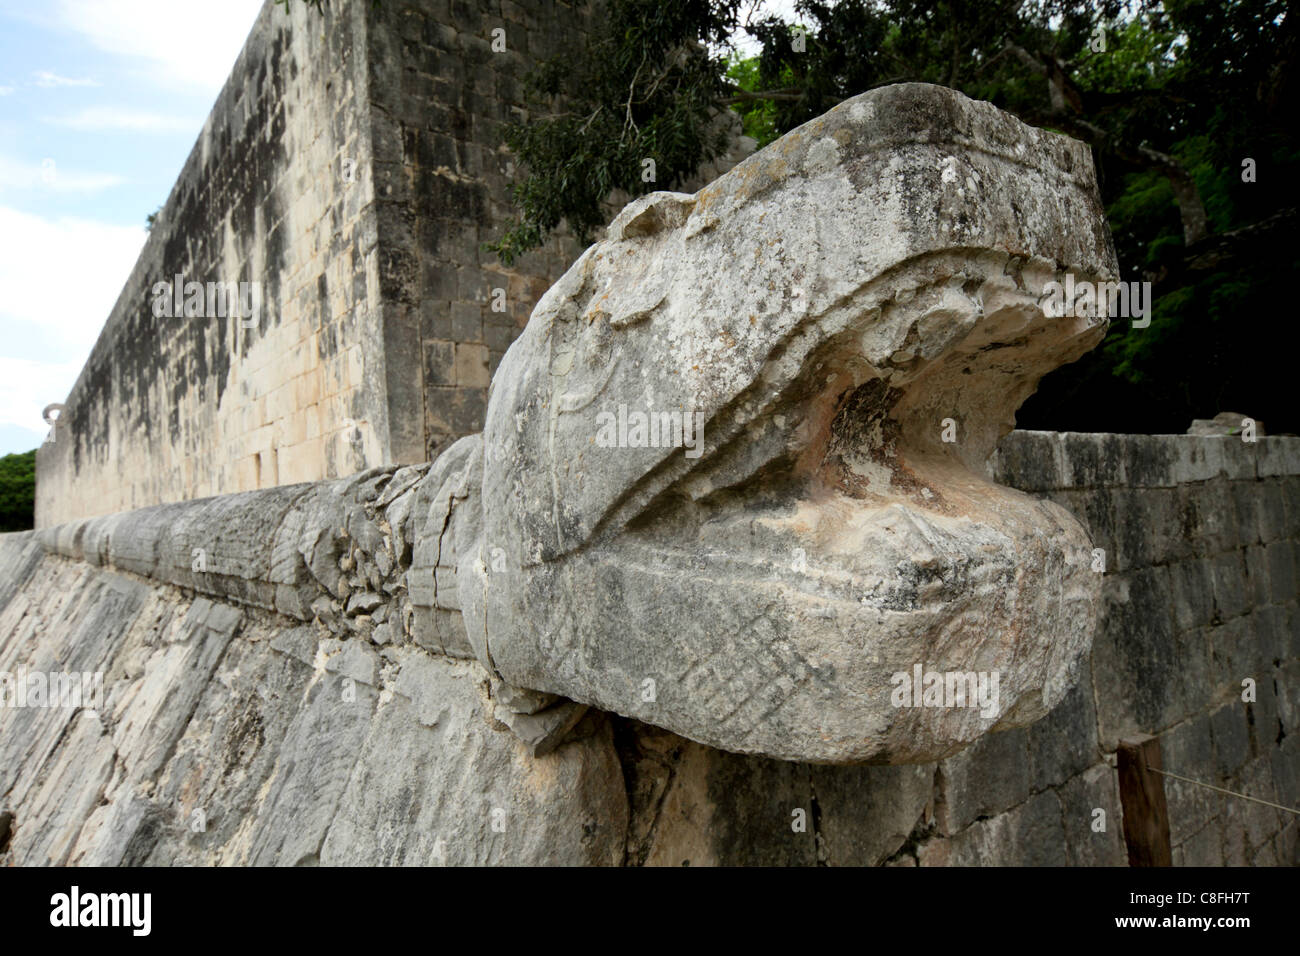 Massive stone carving of snake head, Chichen Itza, UNESCO World Heritage Site, Yucatan, Mexico Stock Photo